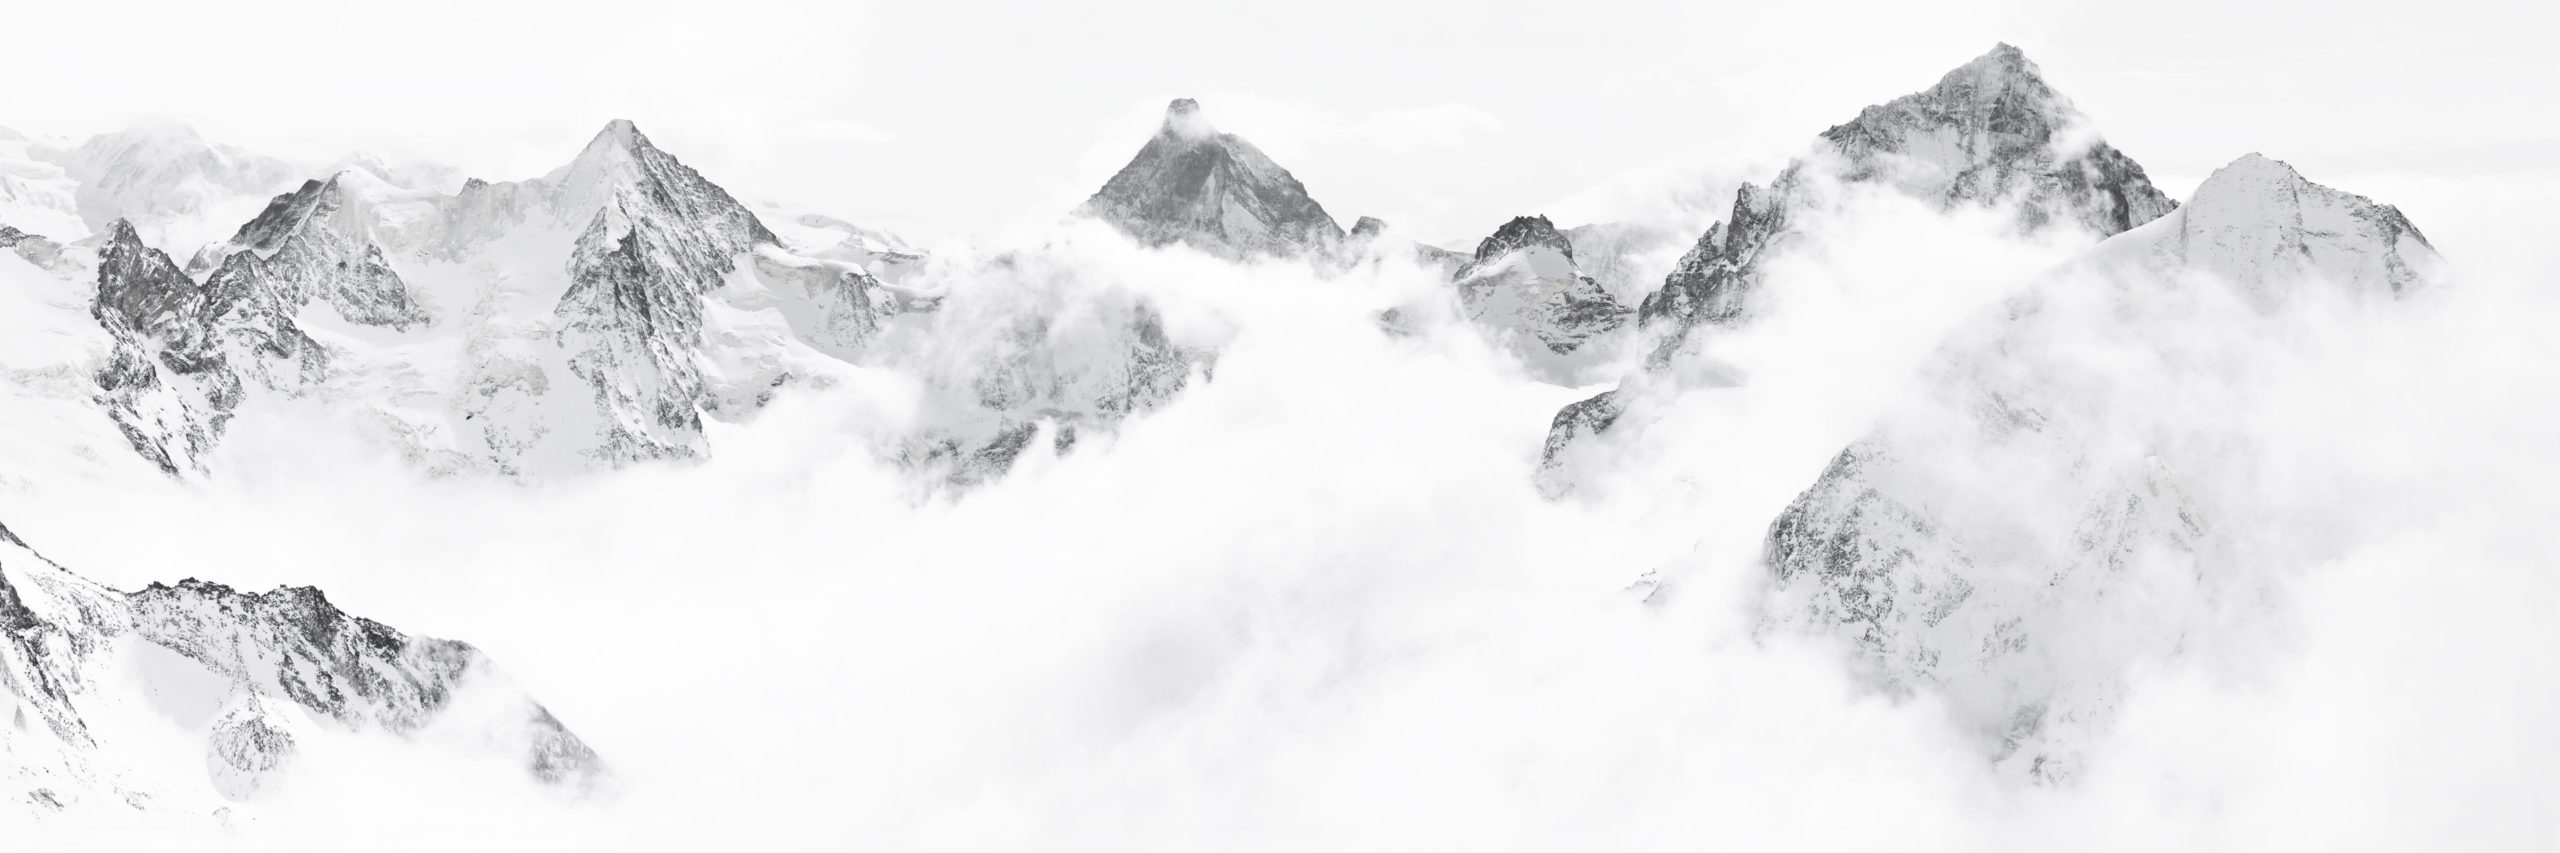 Kaiserkrone von Zinal - Bergfoto im Winter - Gerahmtes Foto von einem Bergmassiv-Panorama